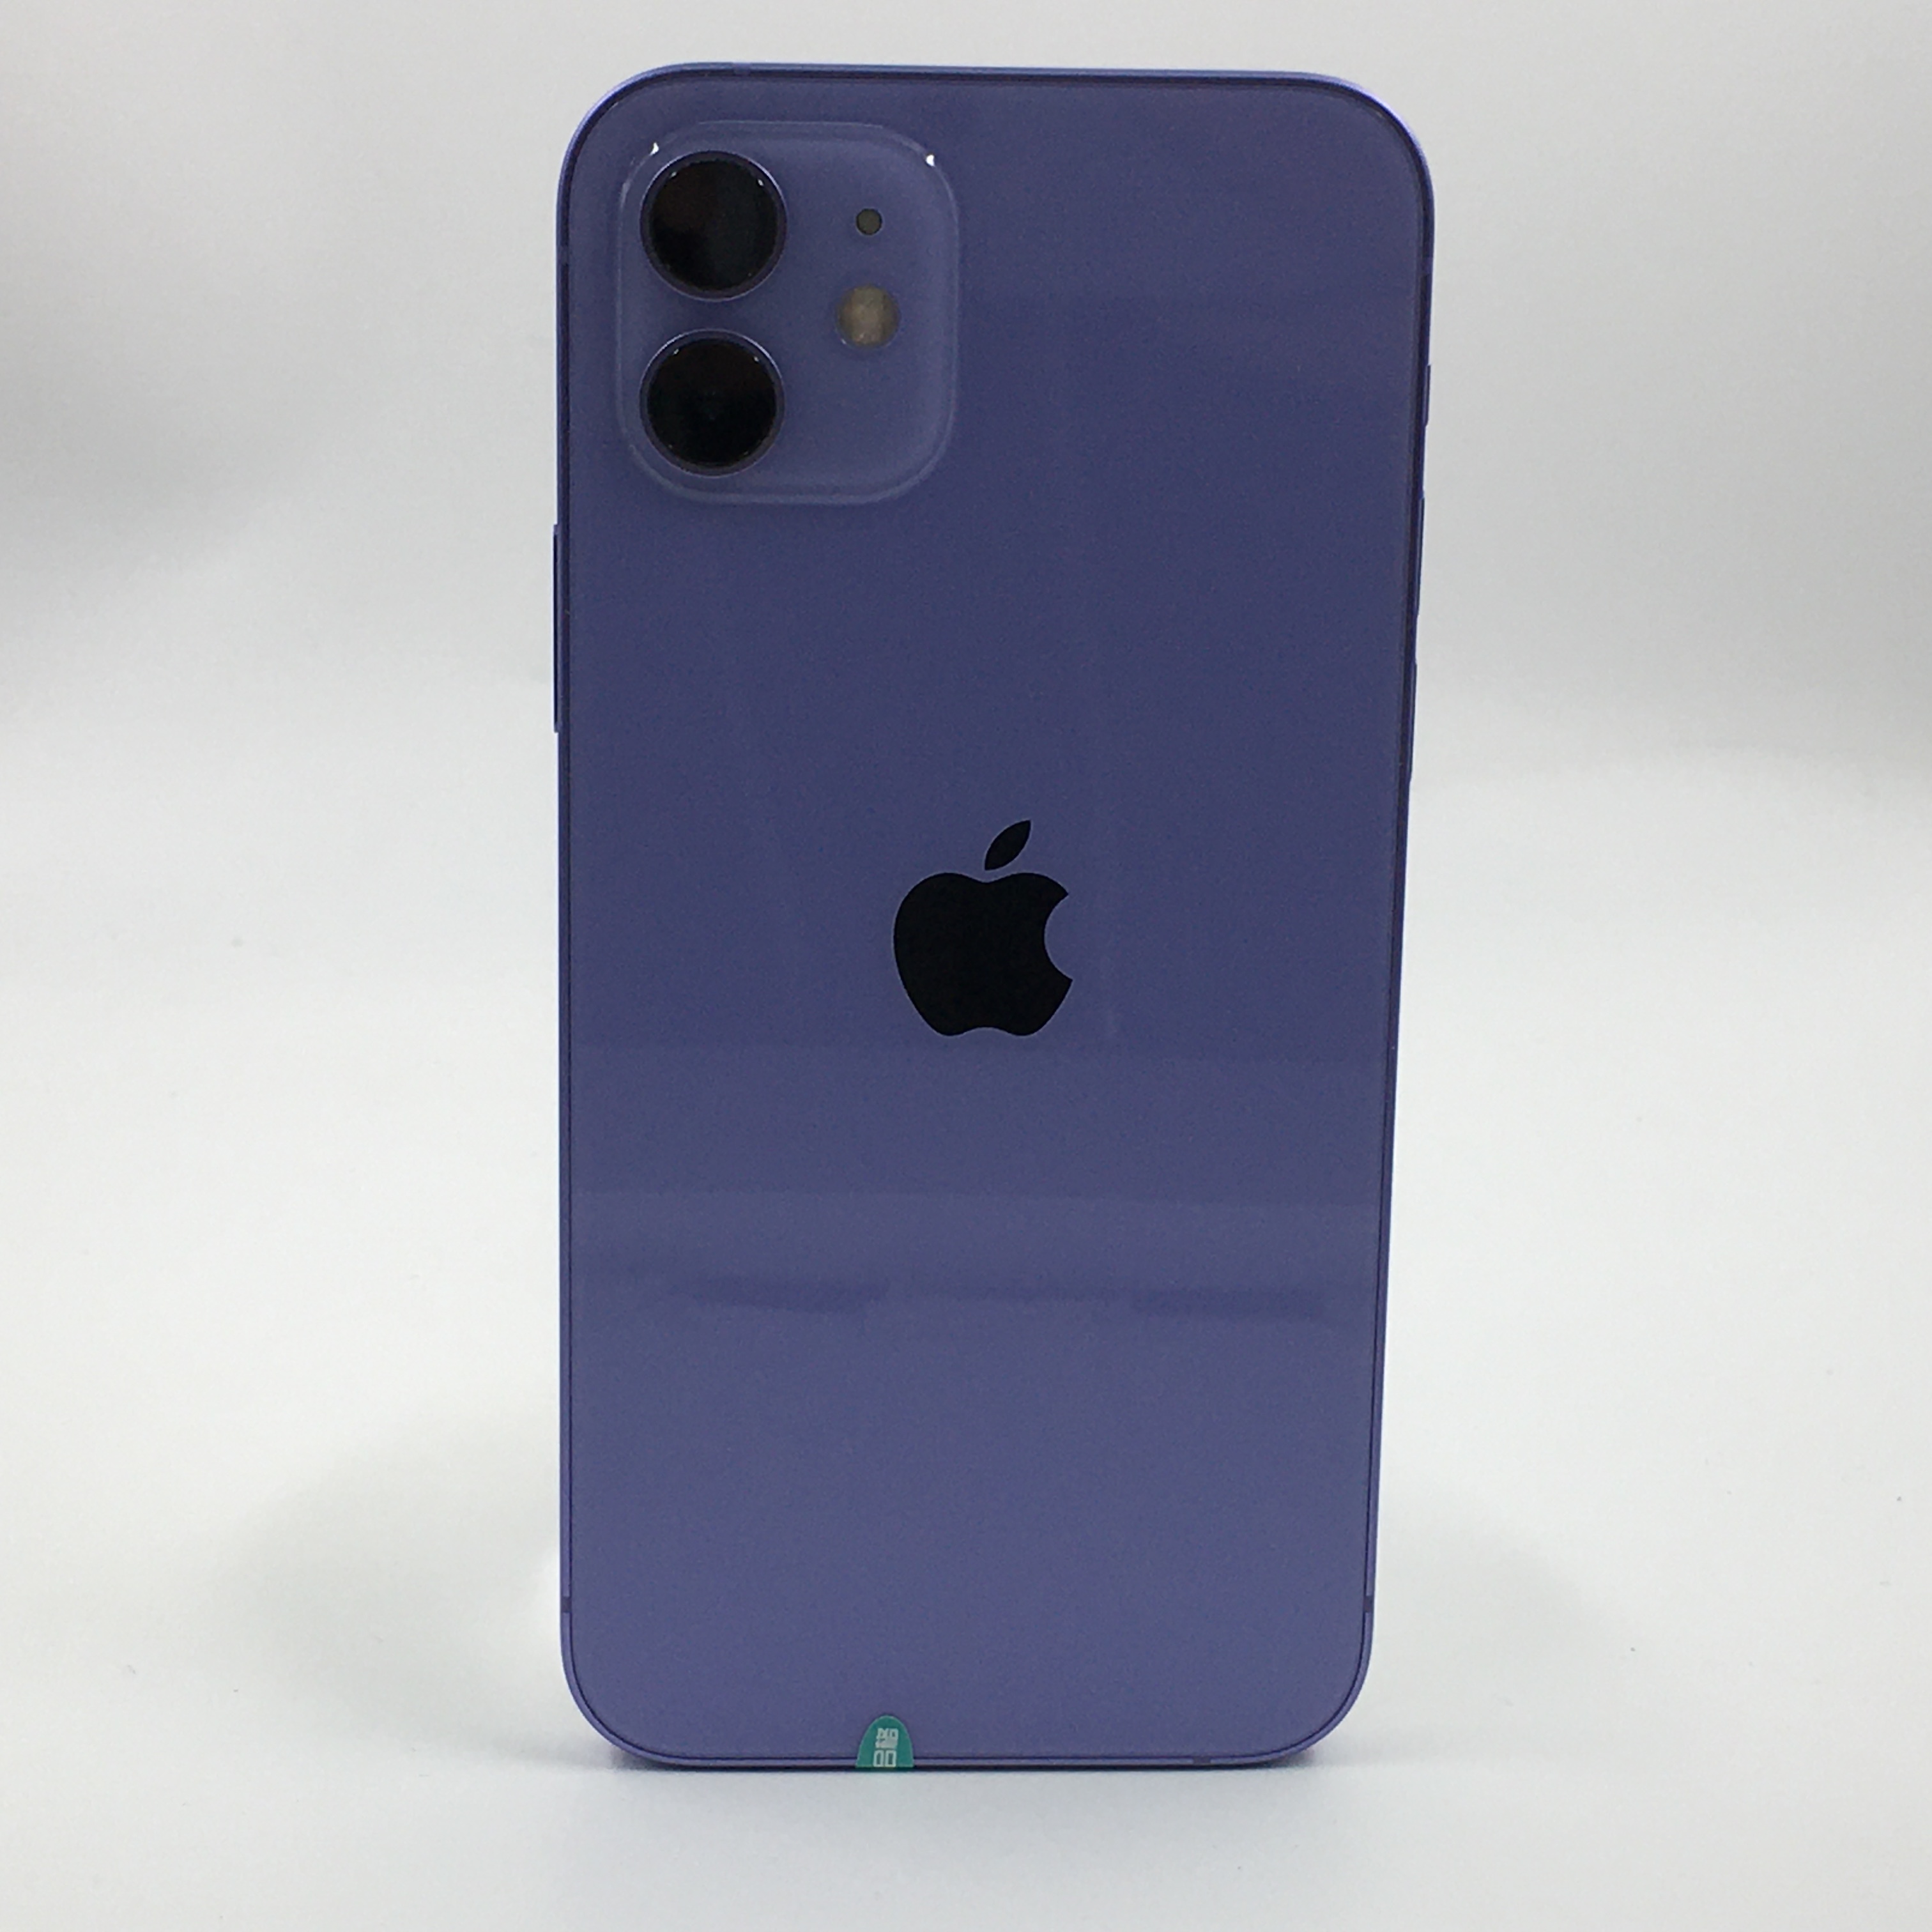 苹果【iPhone 12】5G全网通 紫色 128G 国行 99新 128G